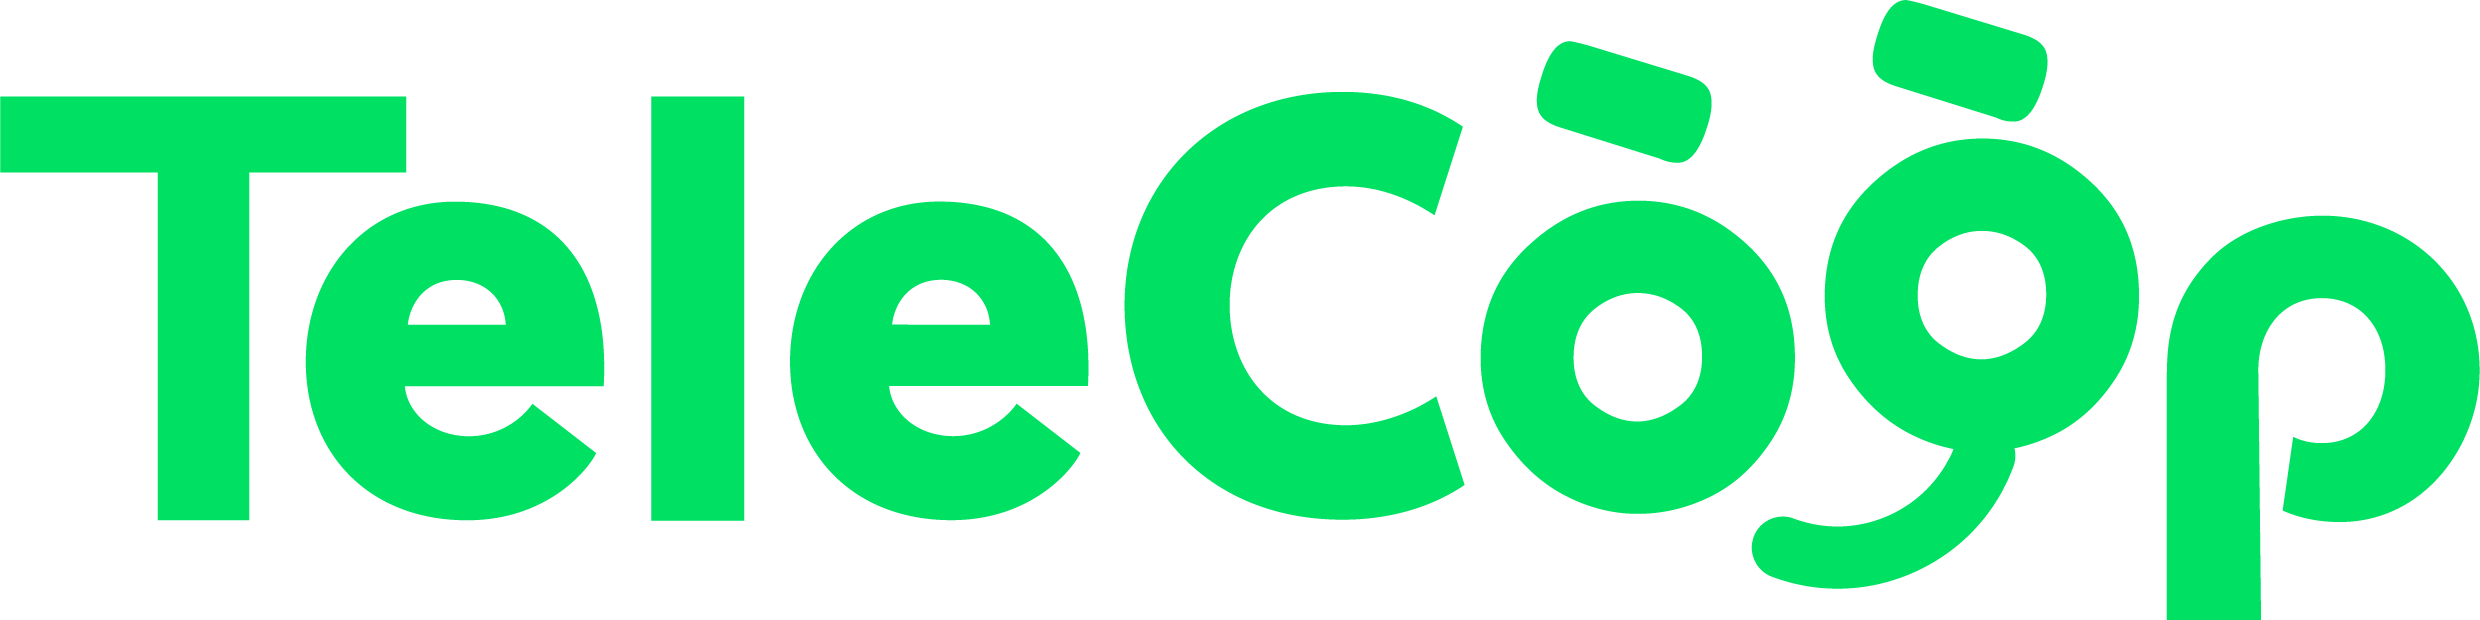 Logo Télecoop